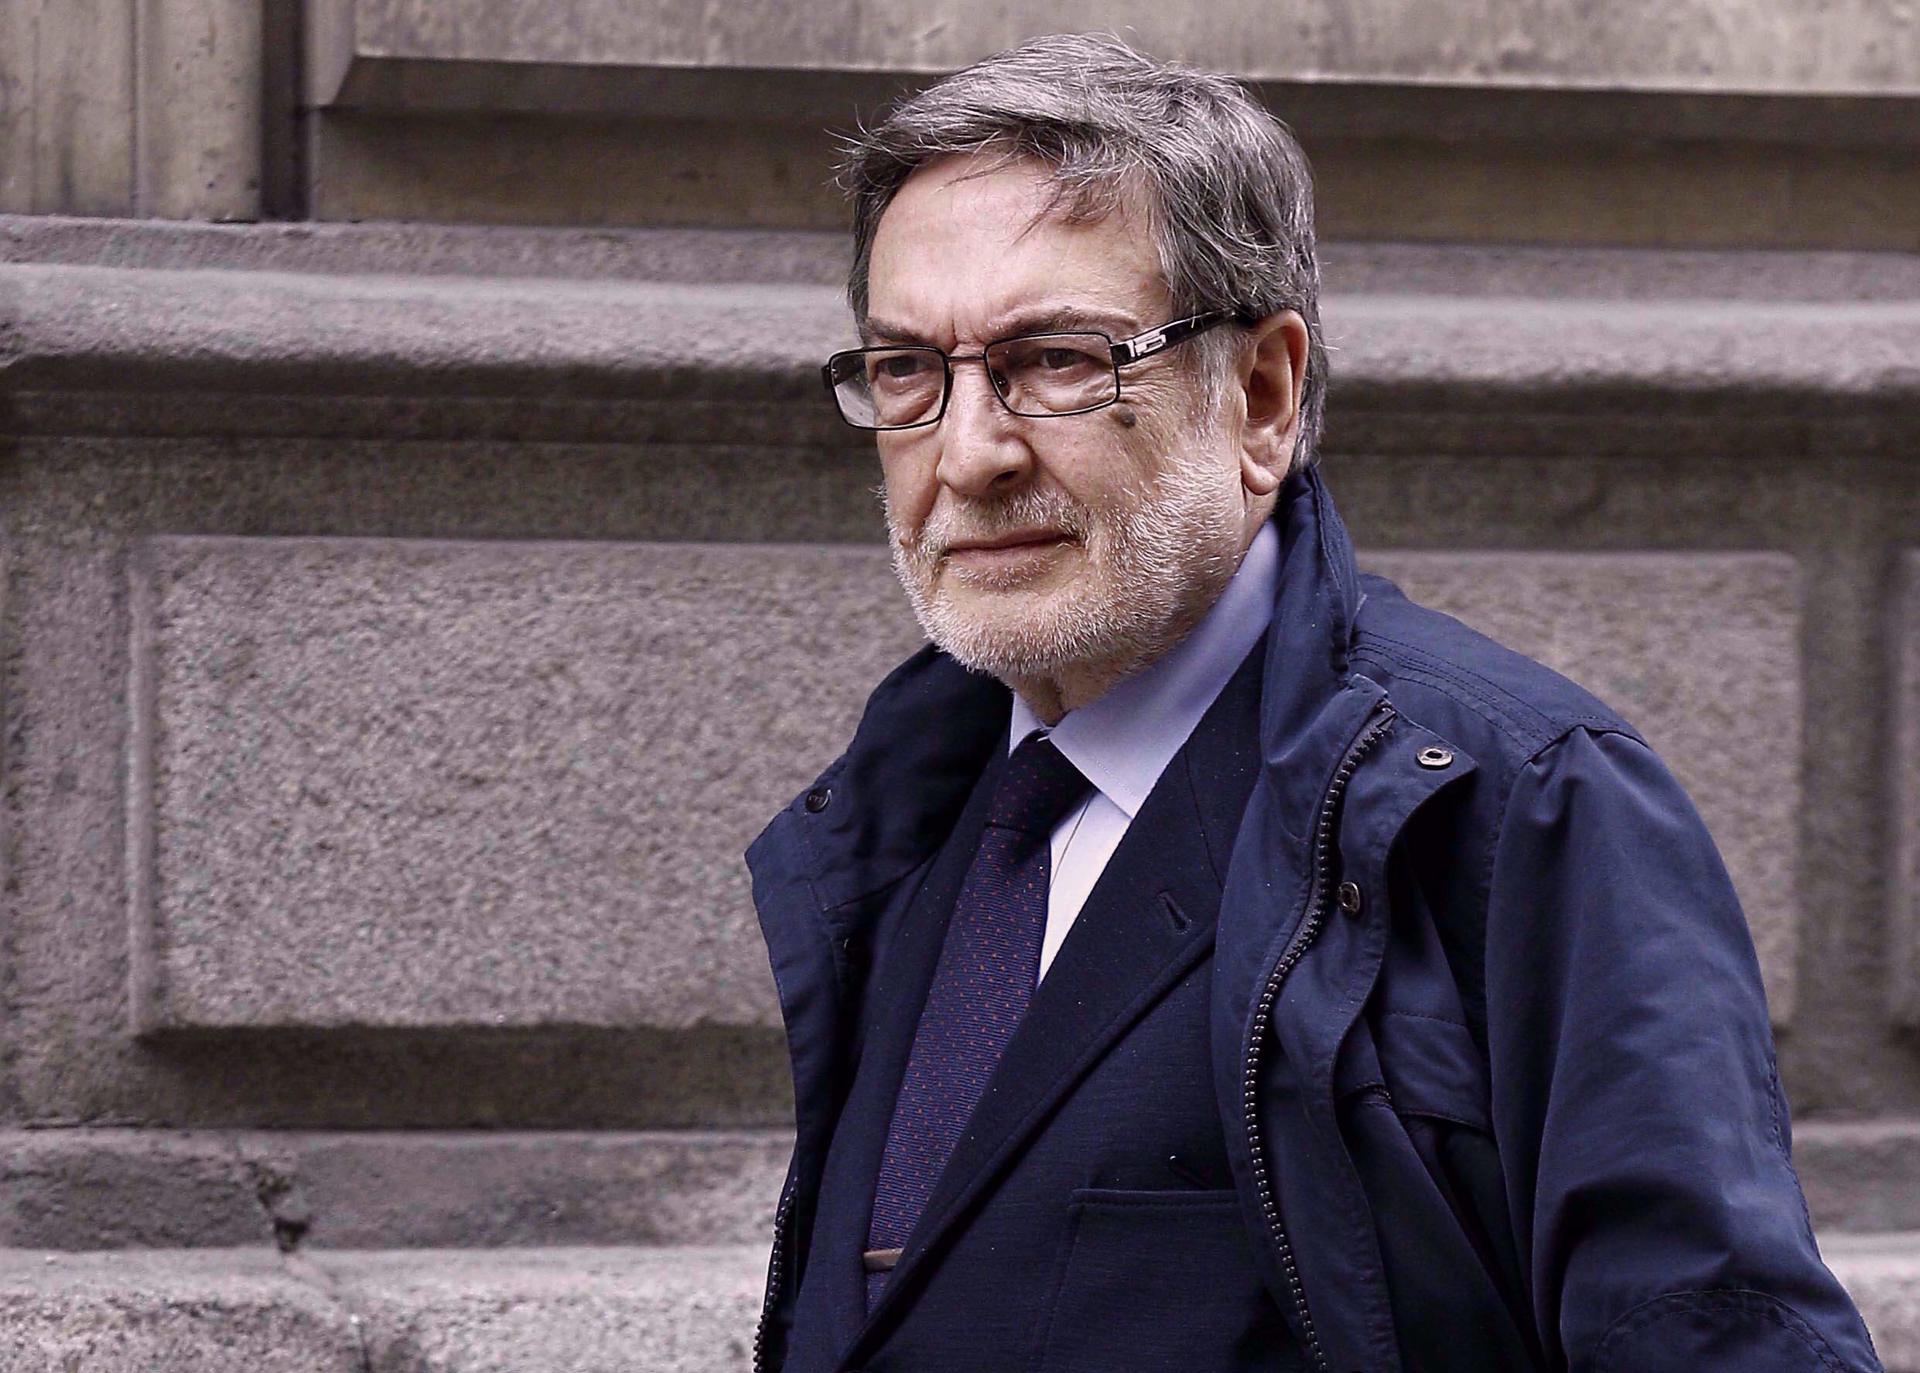 Muere Eugenio Nasarre, exdiputado del PP y secretario de Educación de Aznar, a los 77 años